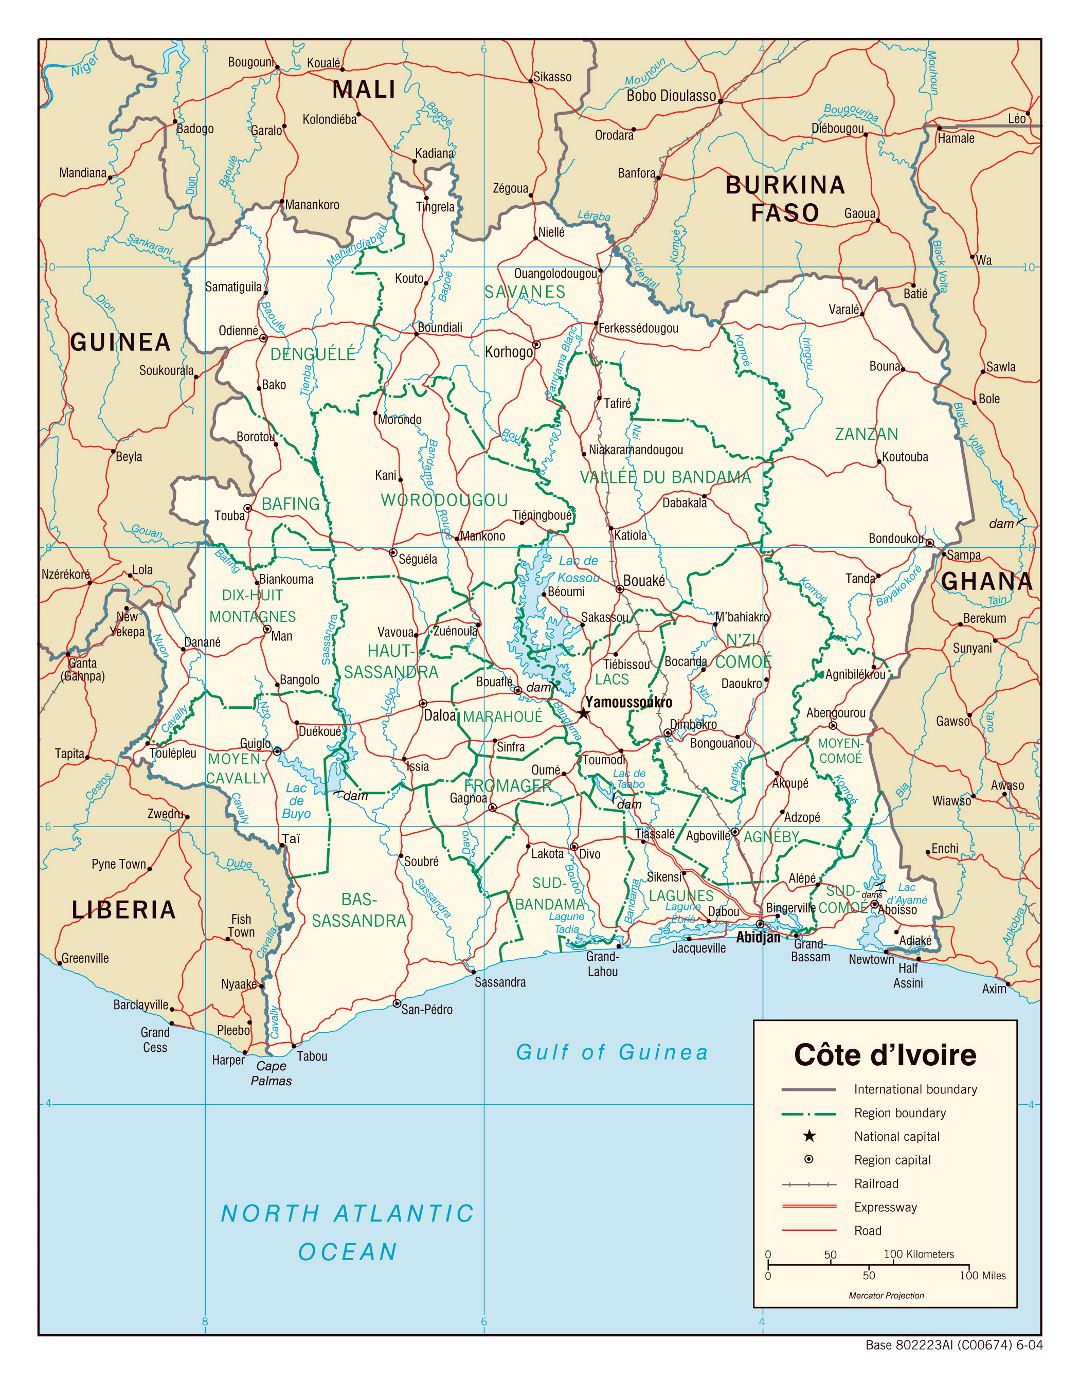 Большая детальная политическая и административная карта Кот-д'Ивуара с дорогами, железными дорогами и крупными городами - 2004